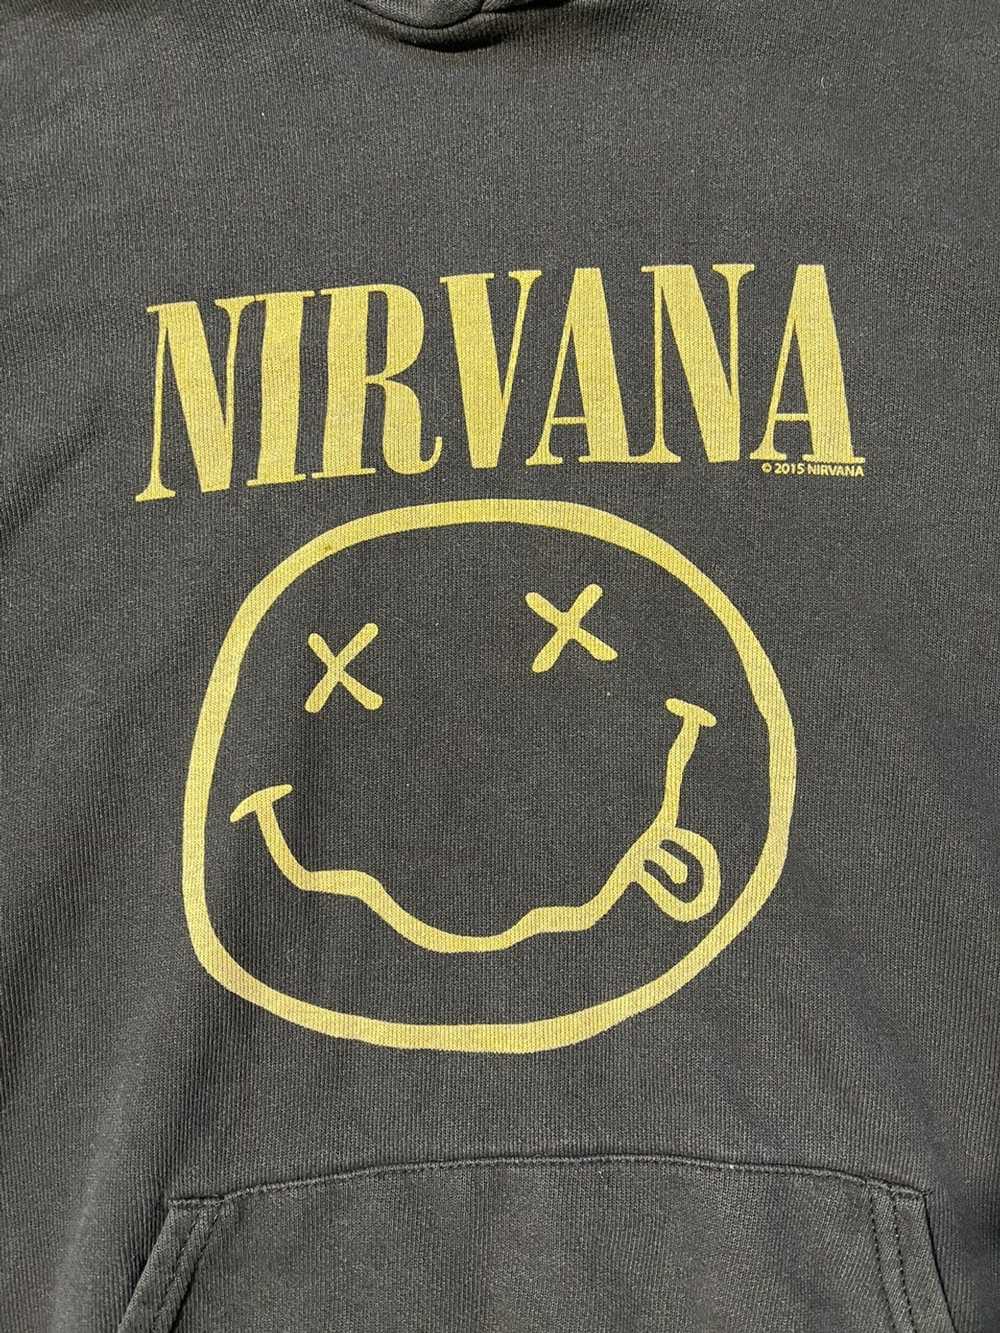 Nirvana × Rock Band × Vintage Nirvana Print Hoodie - image 3